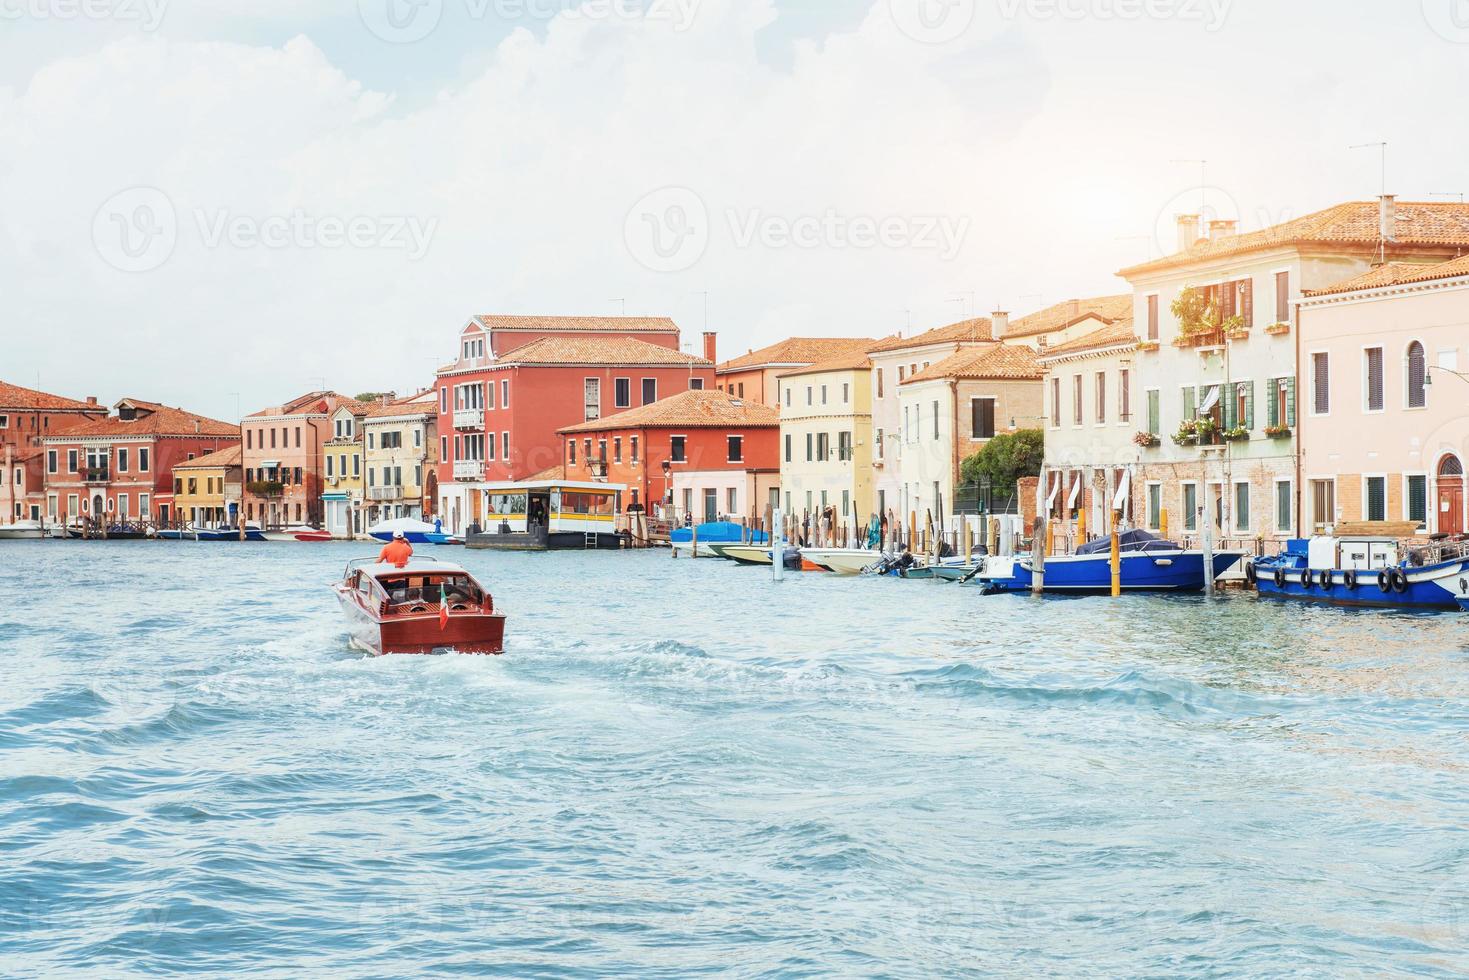 canale d'acqua verde con gondole e facciate colorate di vecchi edifici medievali al sole a venezia, italia. foto